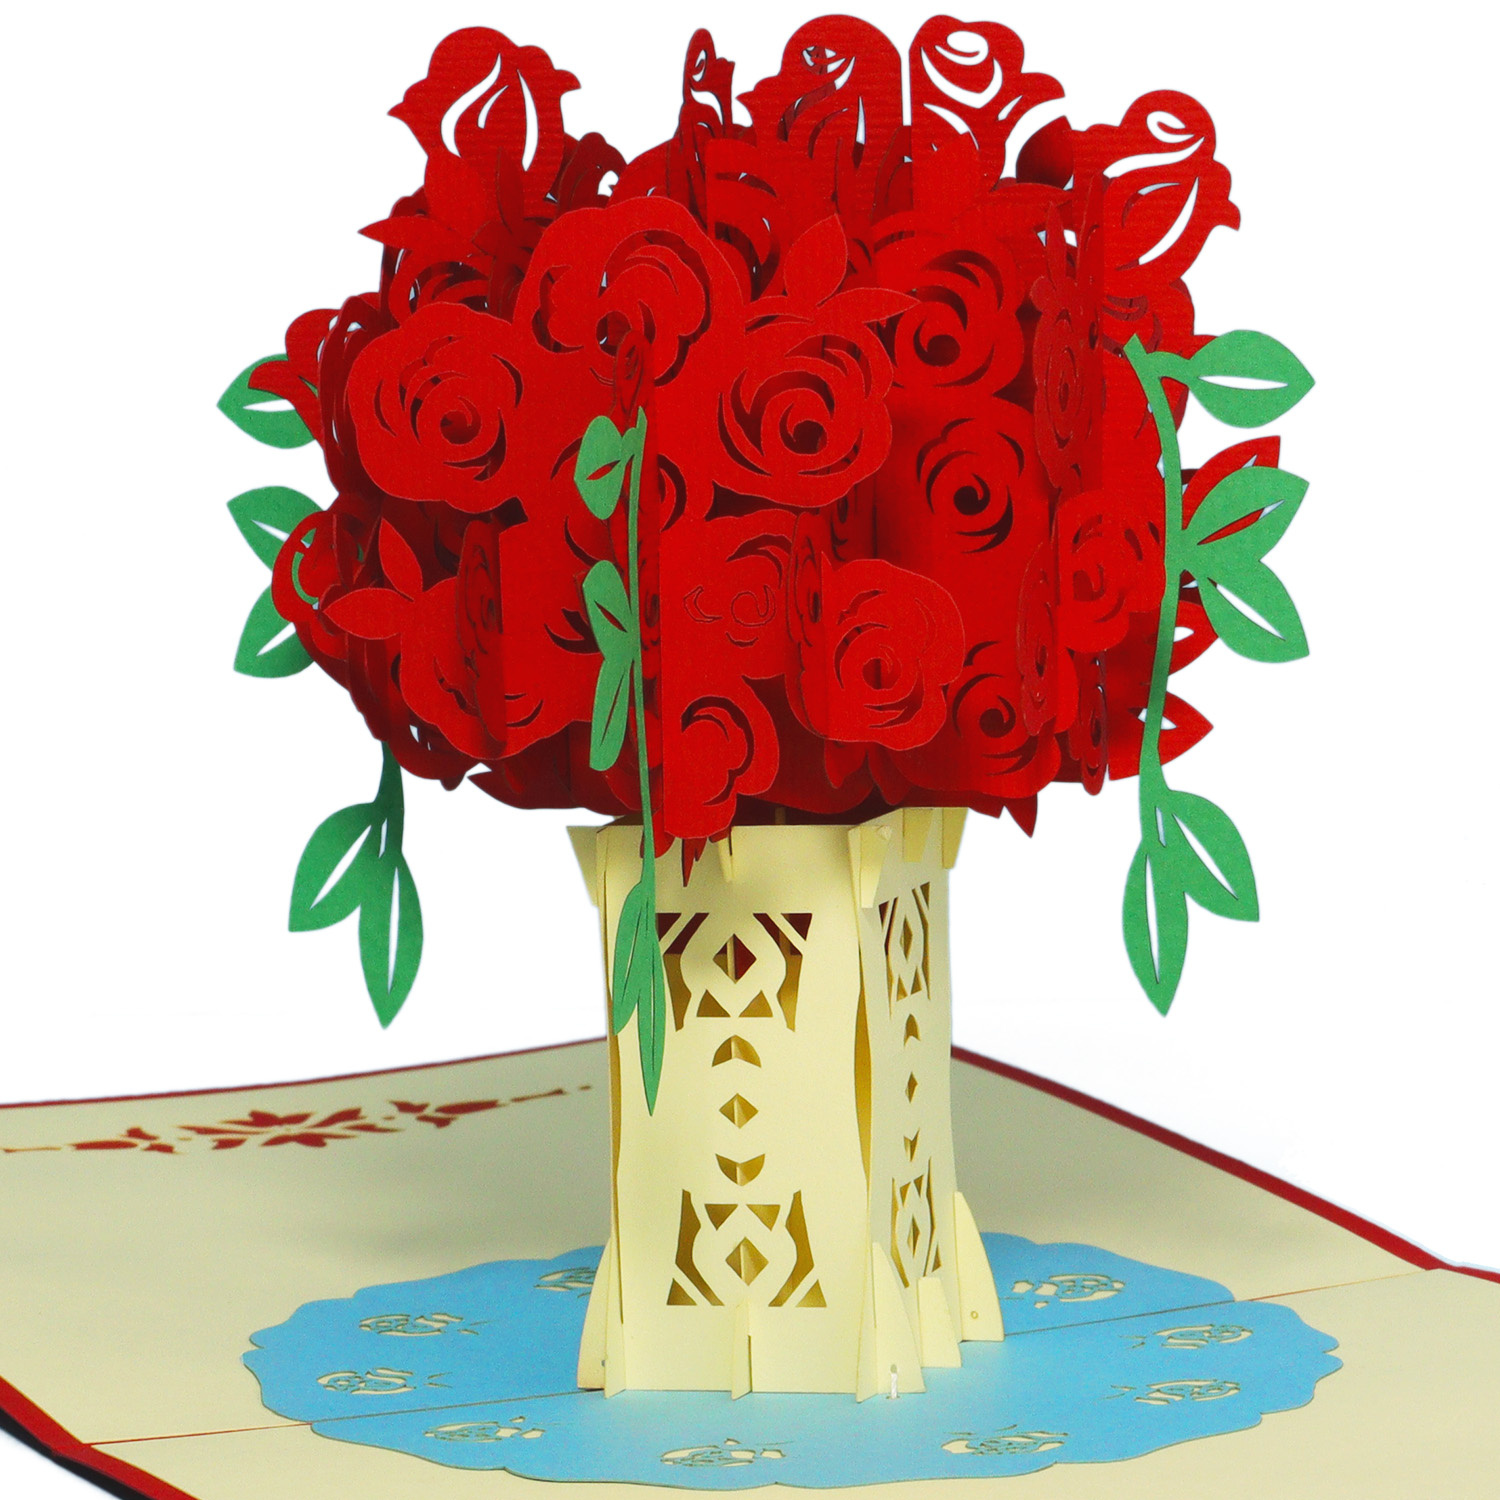 LINPOPUP Pop Up 3D Karte, Hochzeitskarte, Glückwunschkarte Muttertag, Rosentopf, LIN17522, LINPopUp®, N275